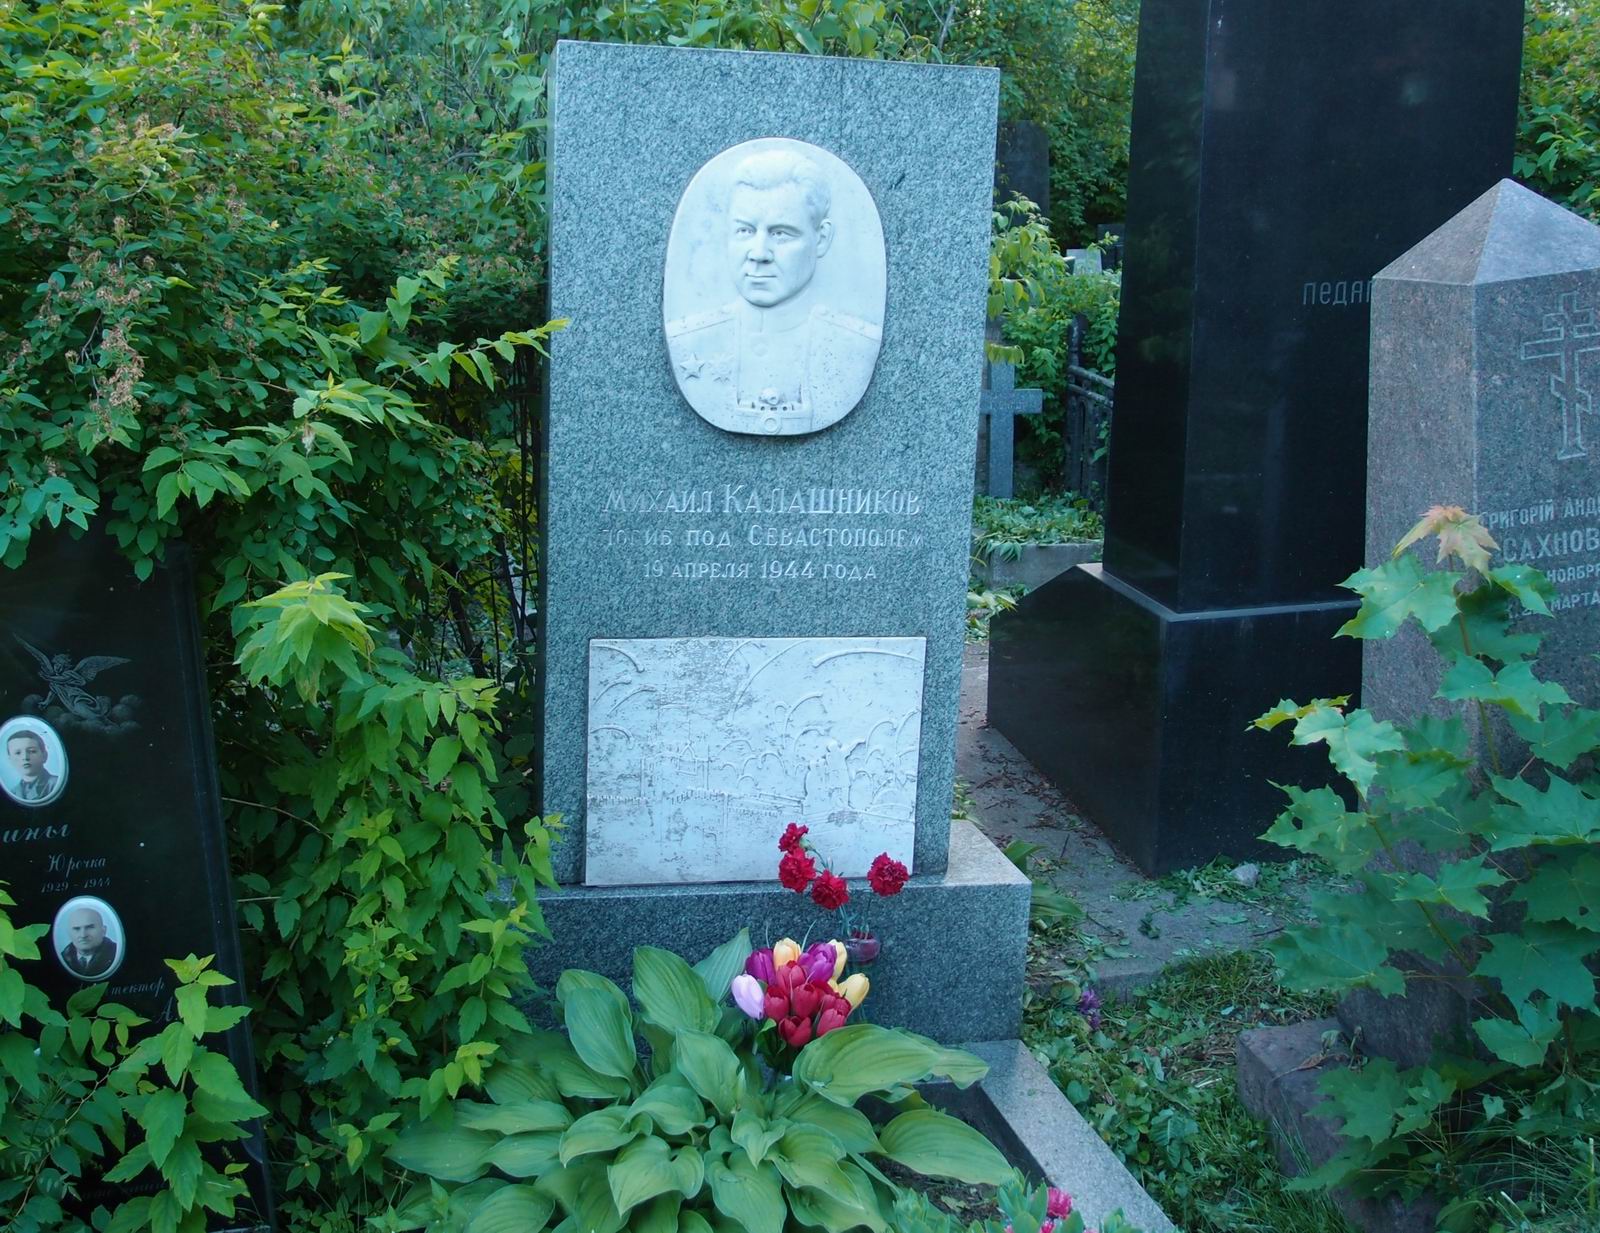 Памятник на могиле Калашникова М.М. (1906–1944), на Новодевичьем кладбище (3–5–4). Нажмите левую кнопку мыши чтобы увидеть фрагмент памятника.